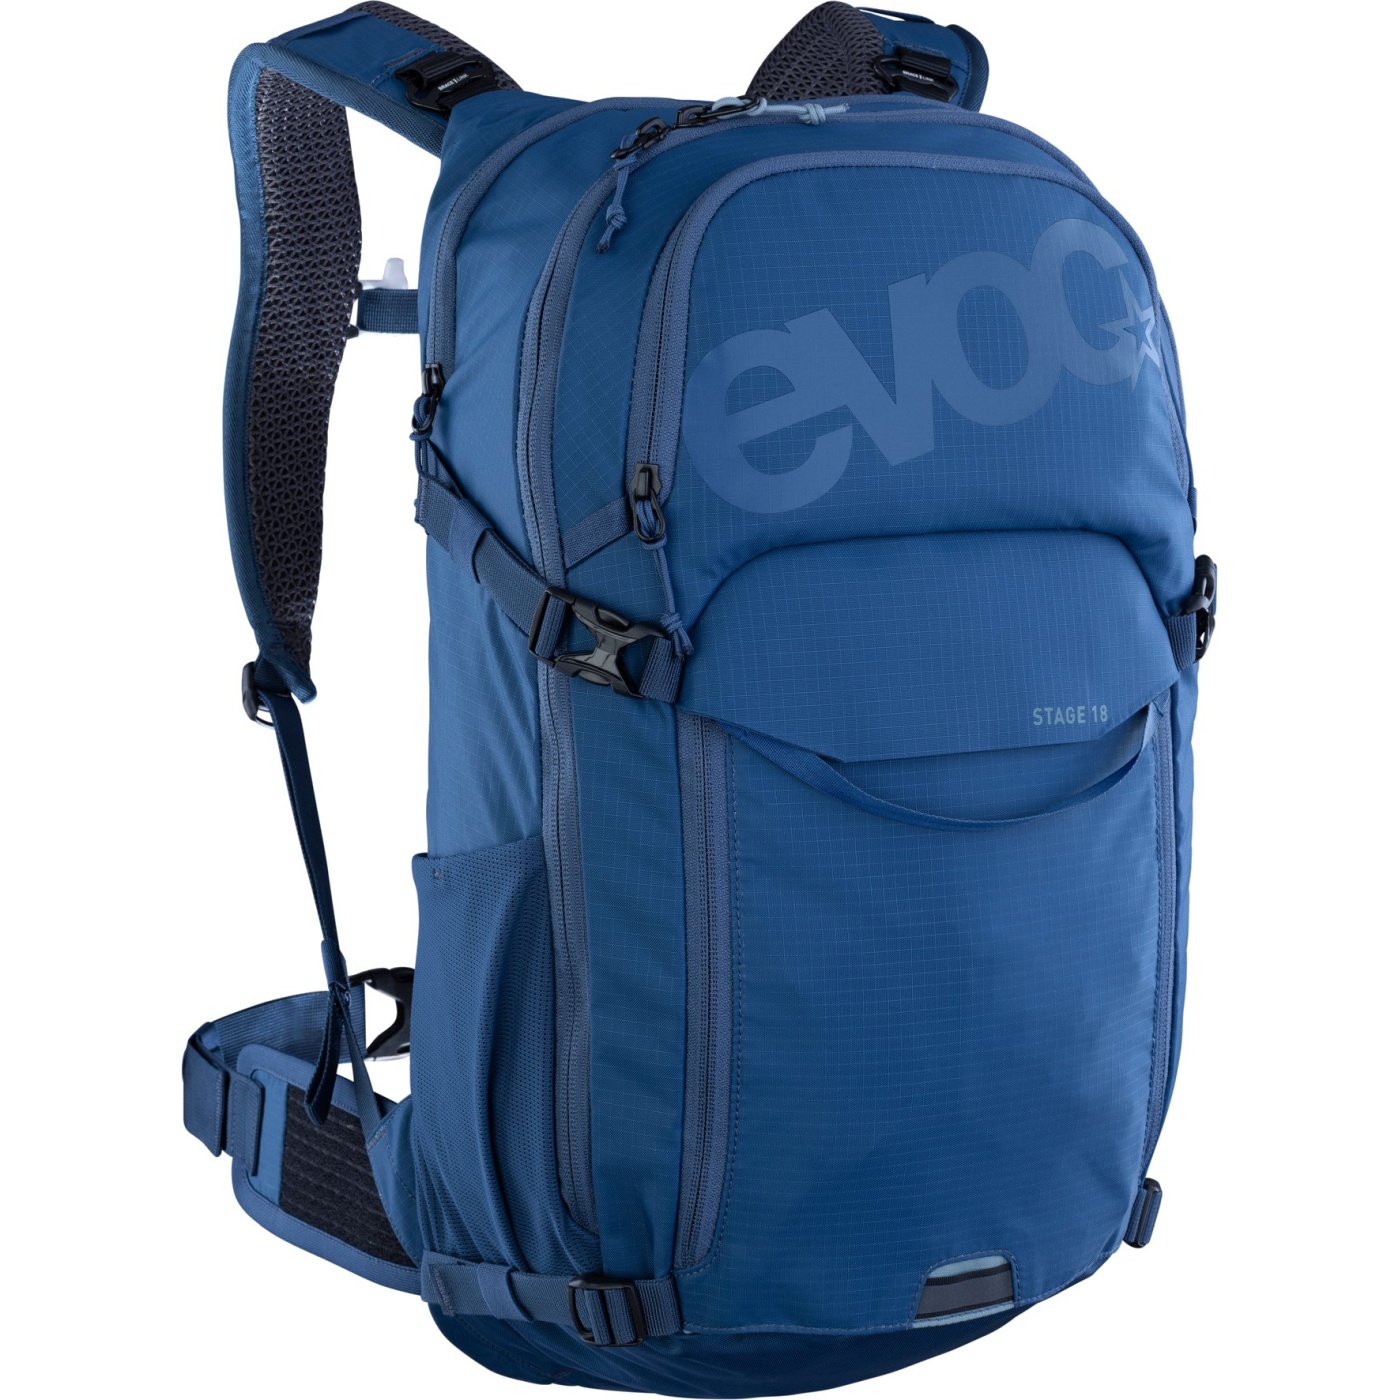 Image of EVOC Stage Backpack - 18 L - Denim